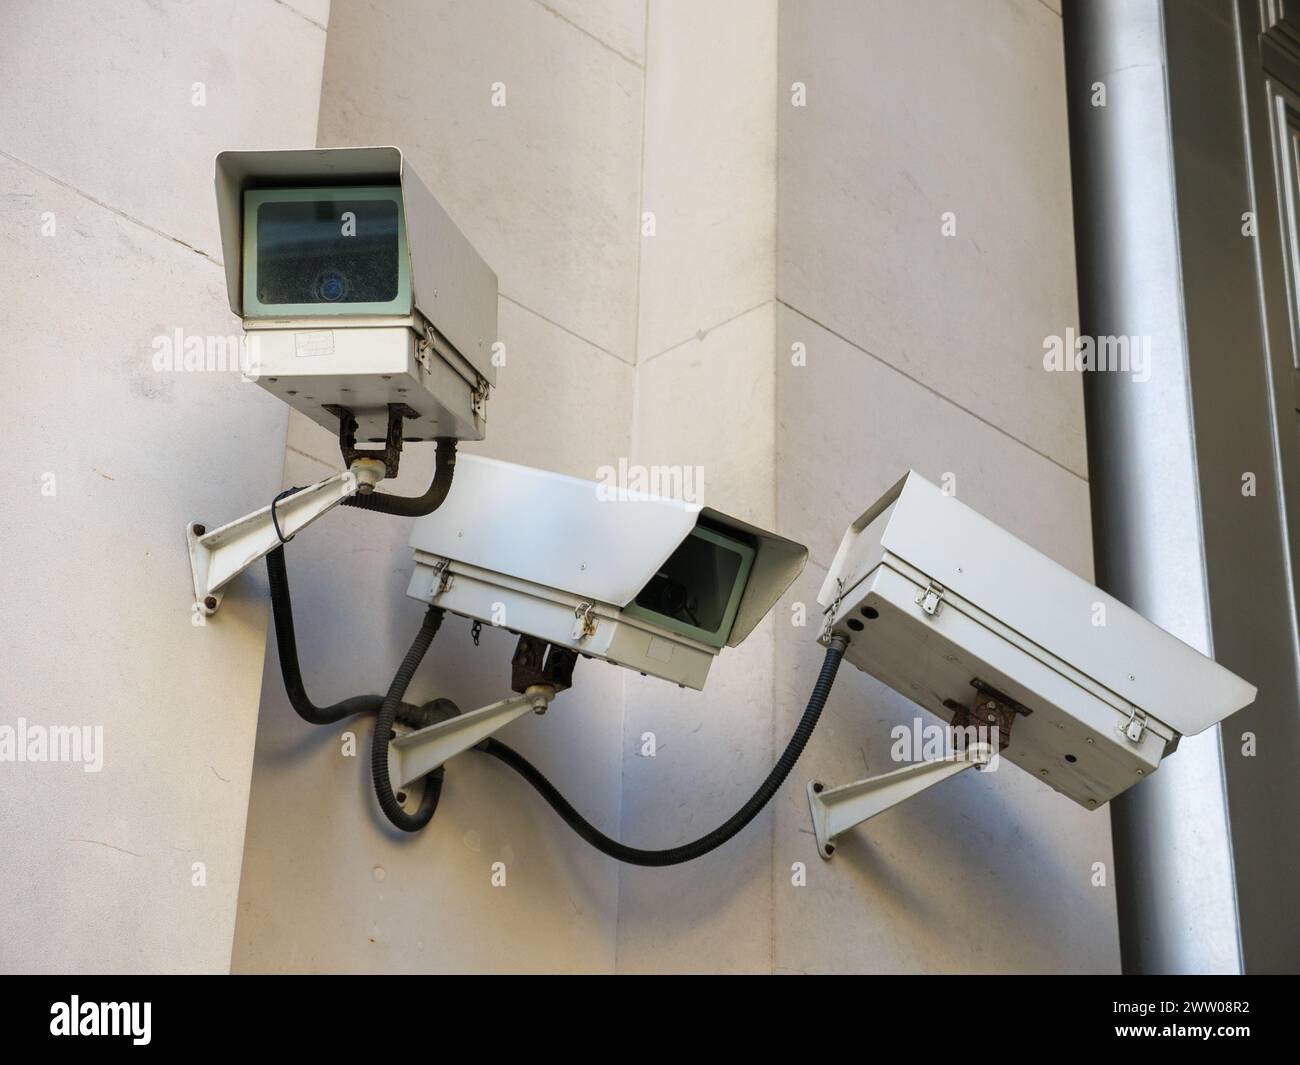 Caméras de vidéosurveillance surveillant l'extérieur du bâtiment, Royaume-Uni Banque D'Images